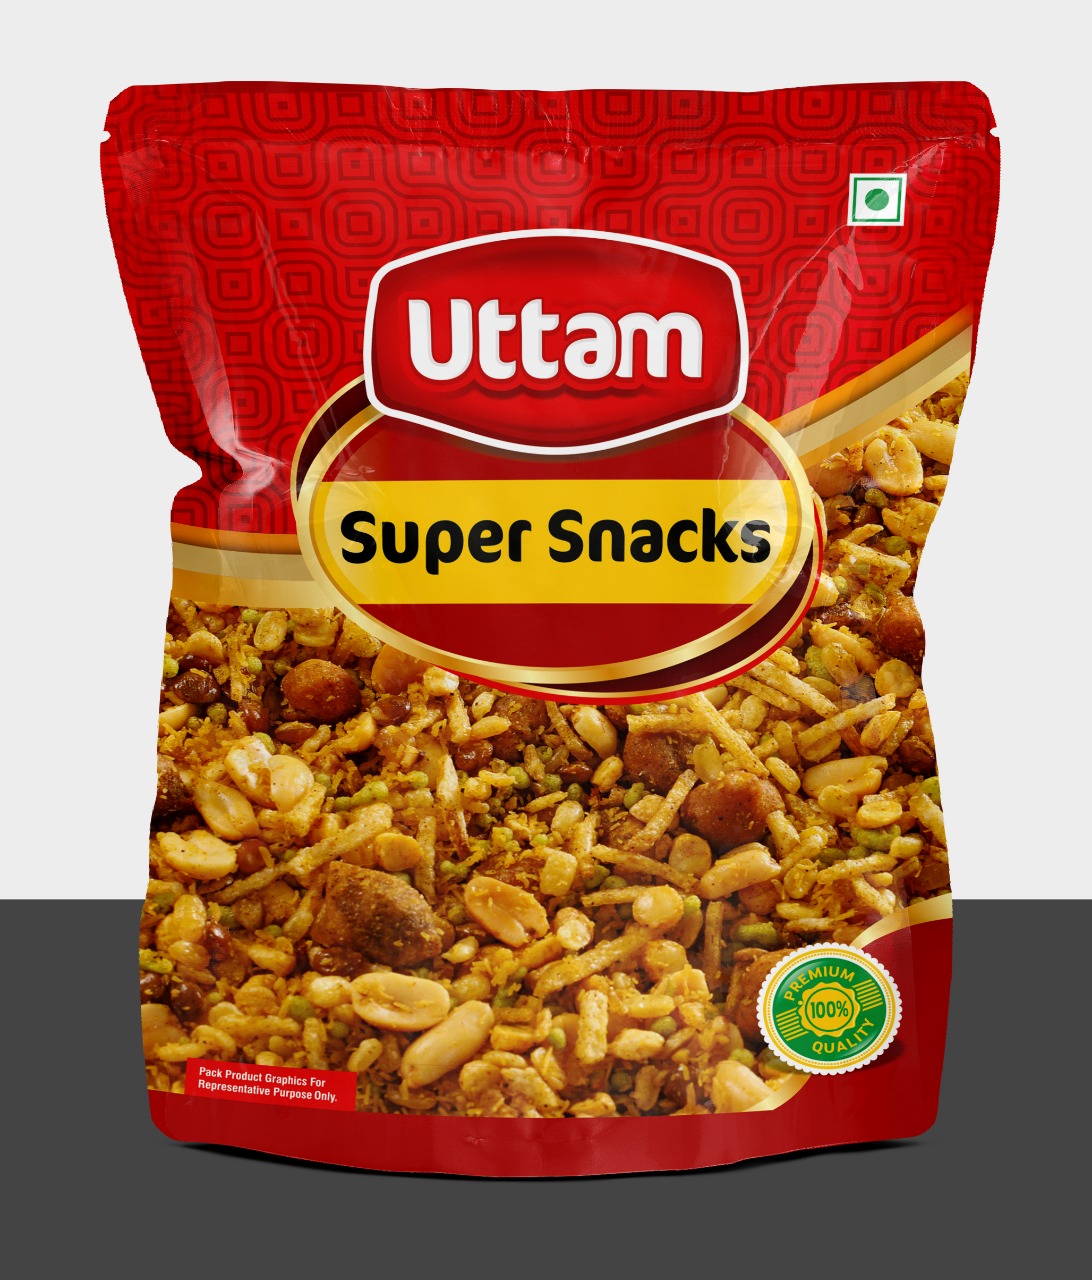 Uttam Super Snacks